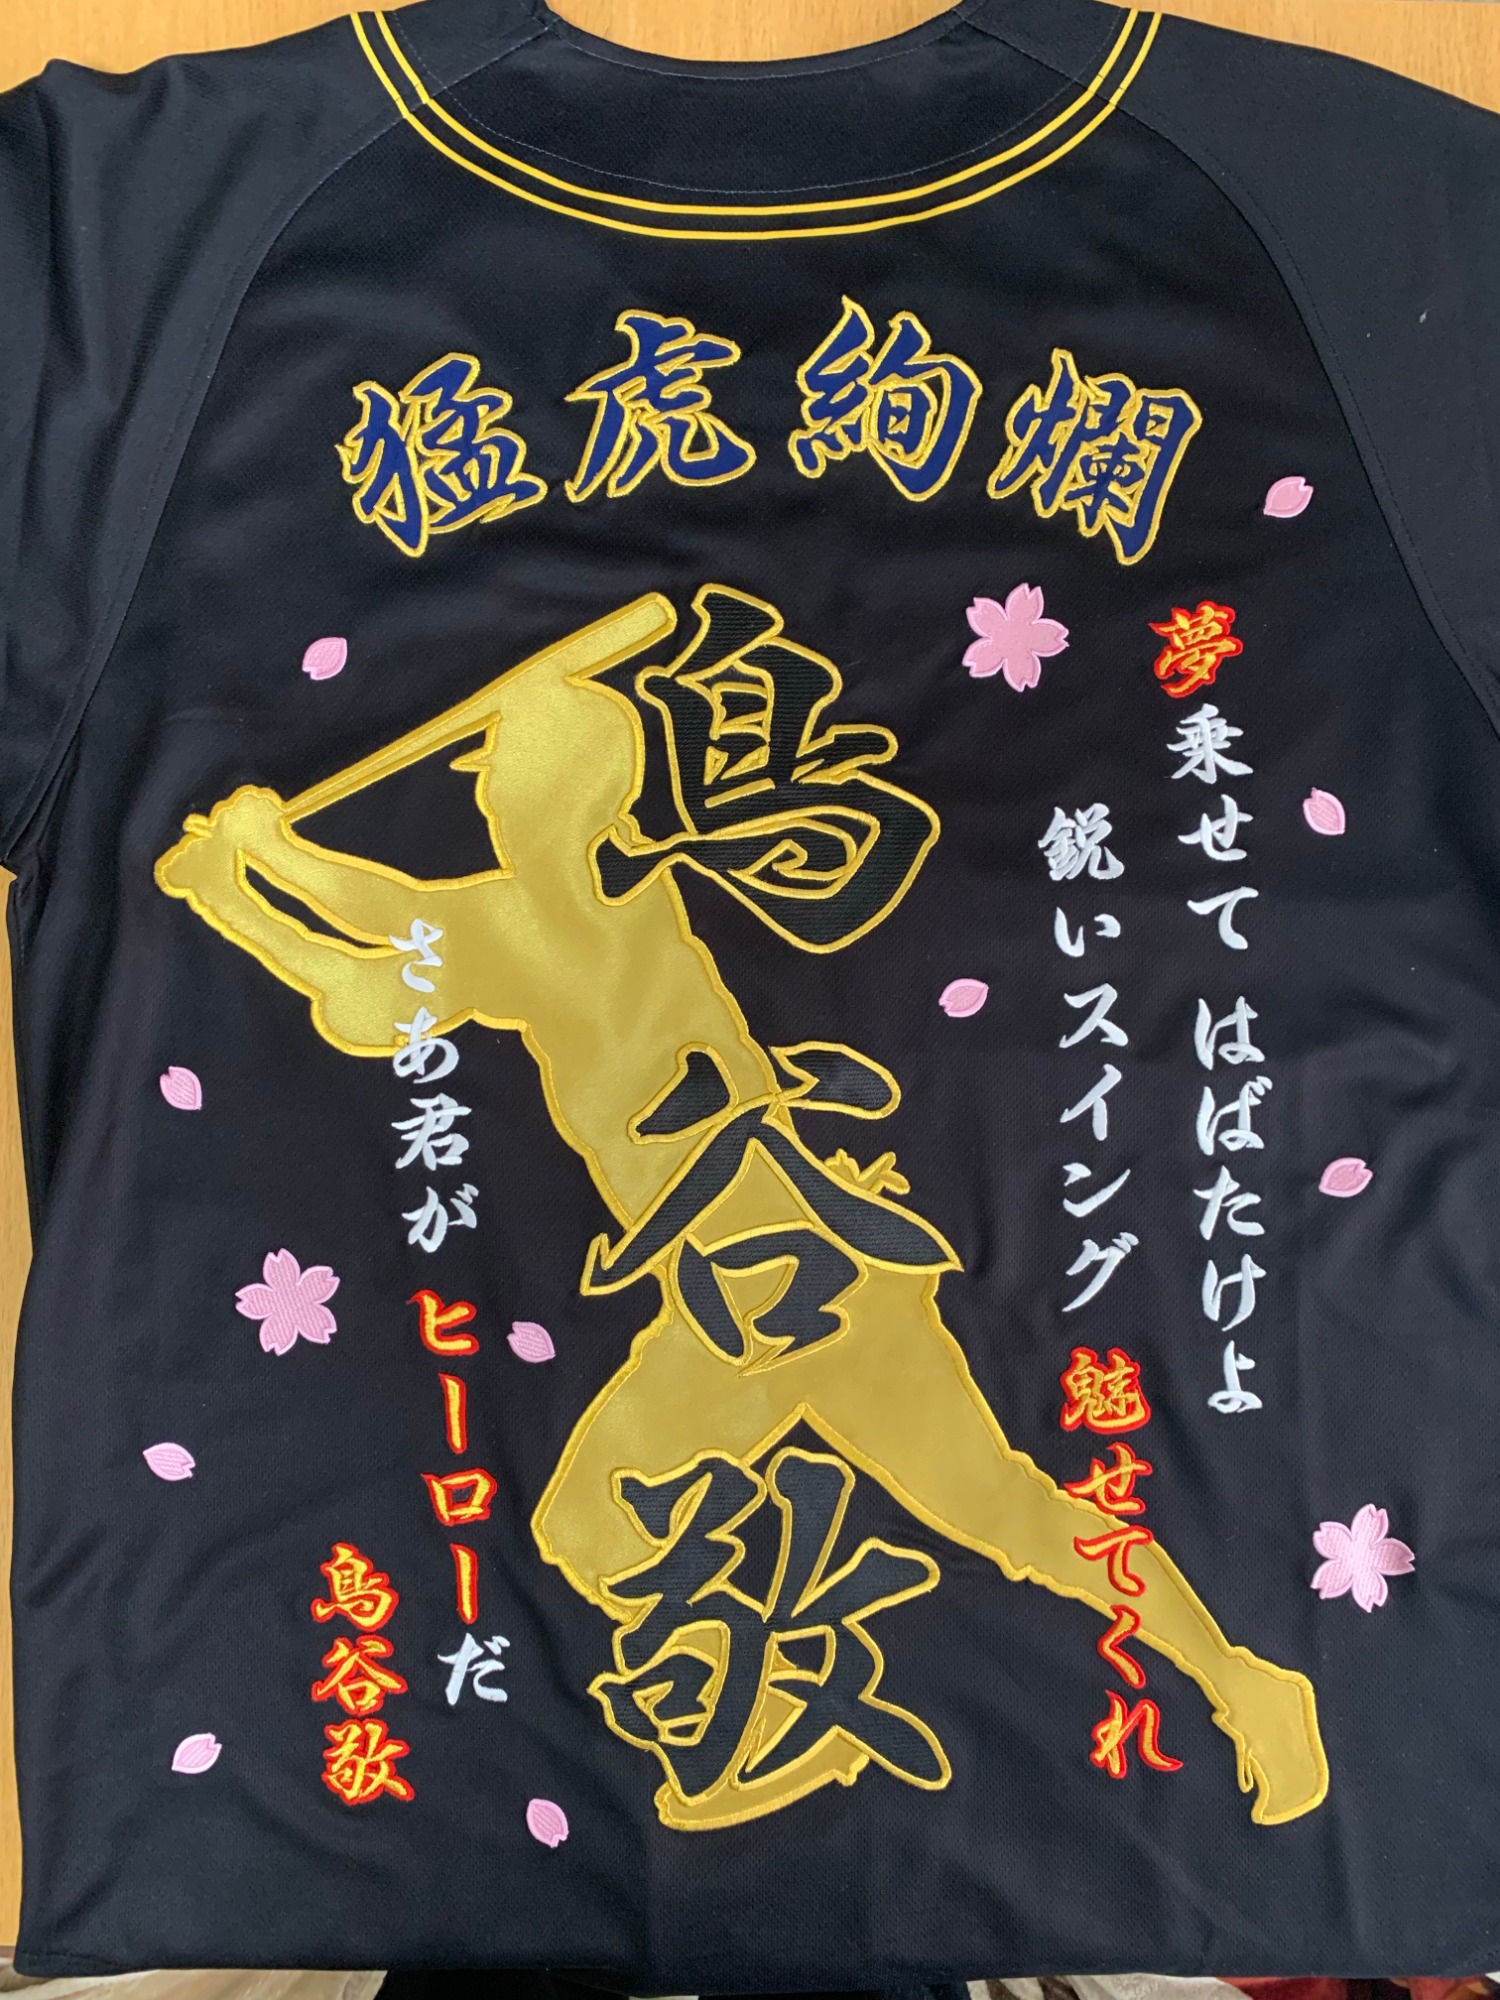 阪神タイガース 鳥谷敬 選手 刺繍ユニフォーム – お客様の声 – 刺繍 